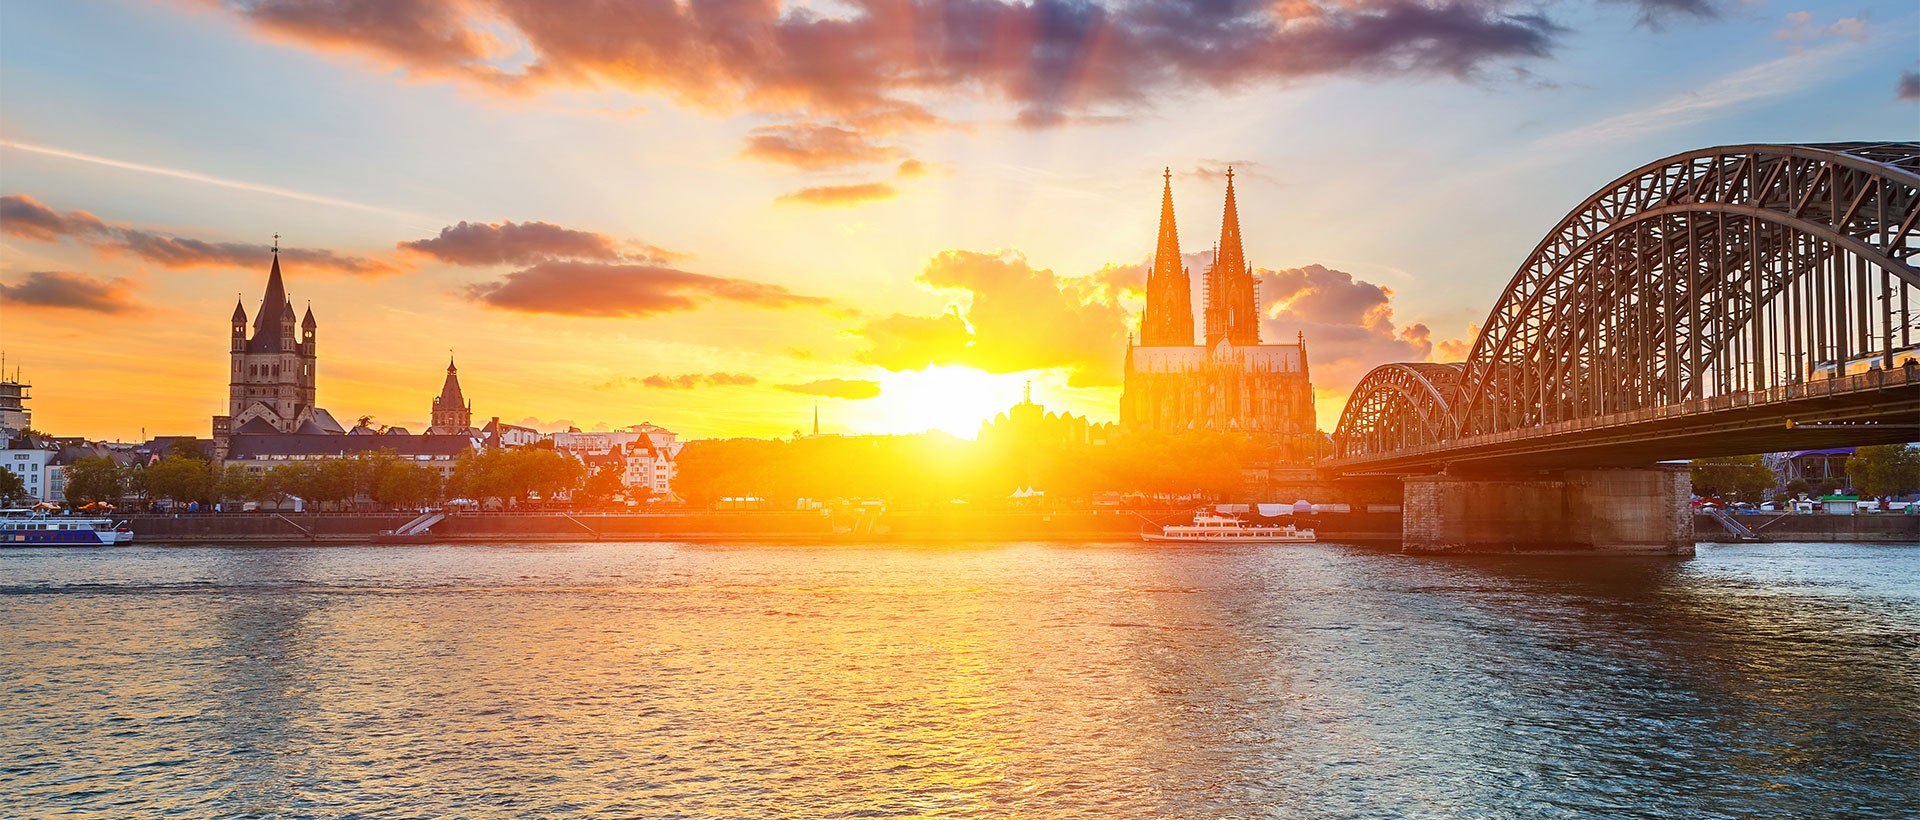 Thành phố Cologne: Đến thăm nhà thờ có mái vòm cao nhất thế giới